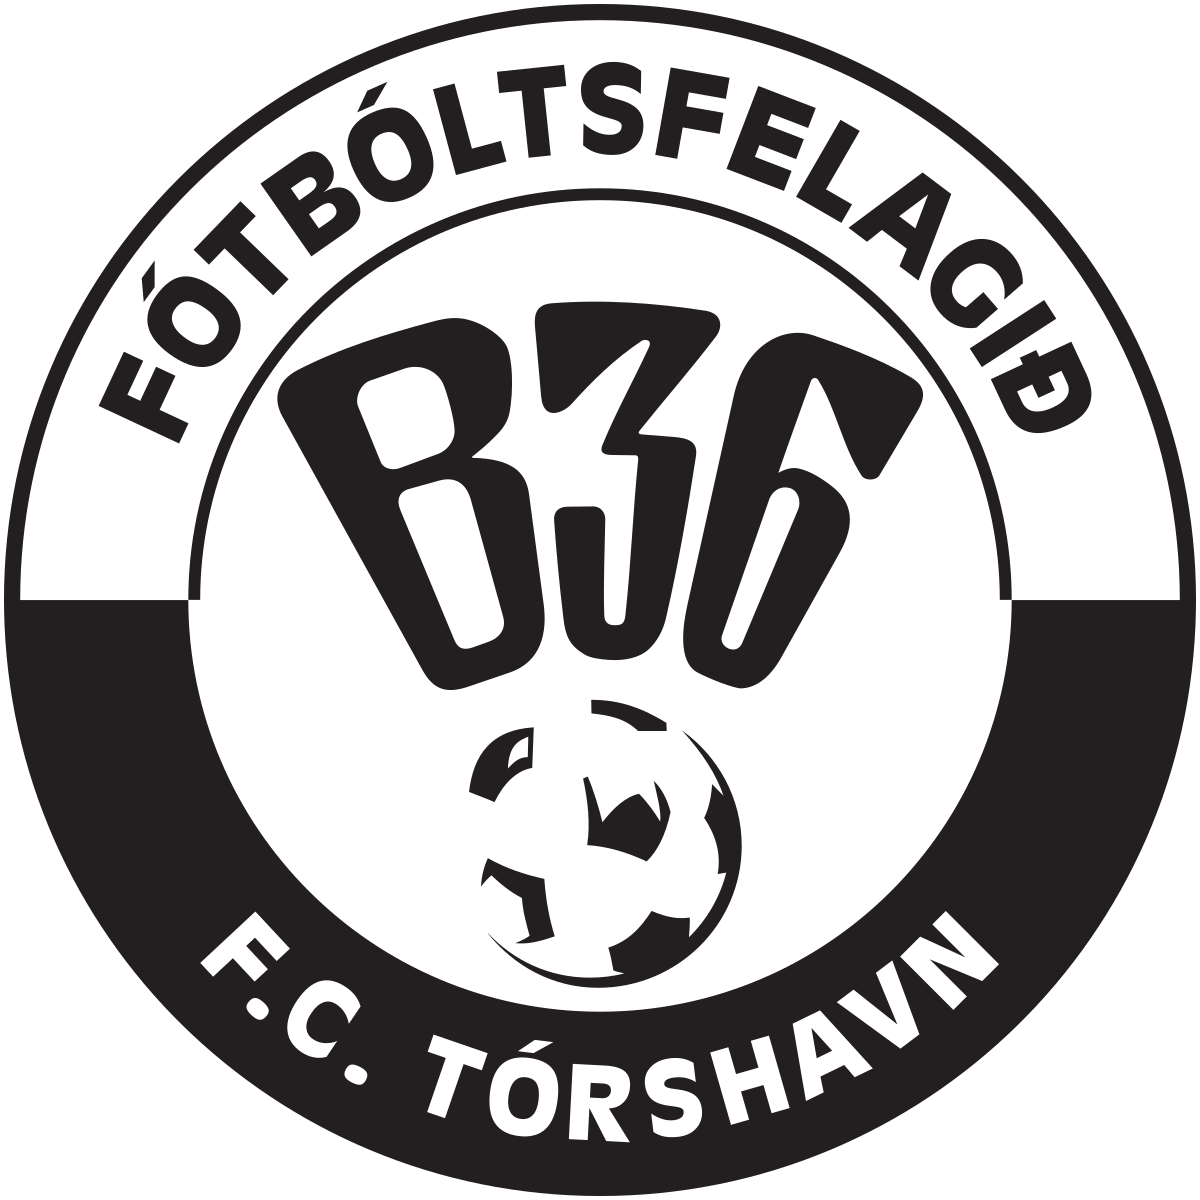 B36 Torshavn W logo